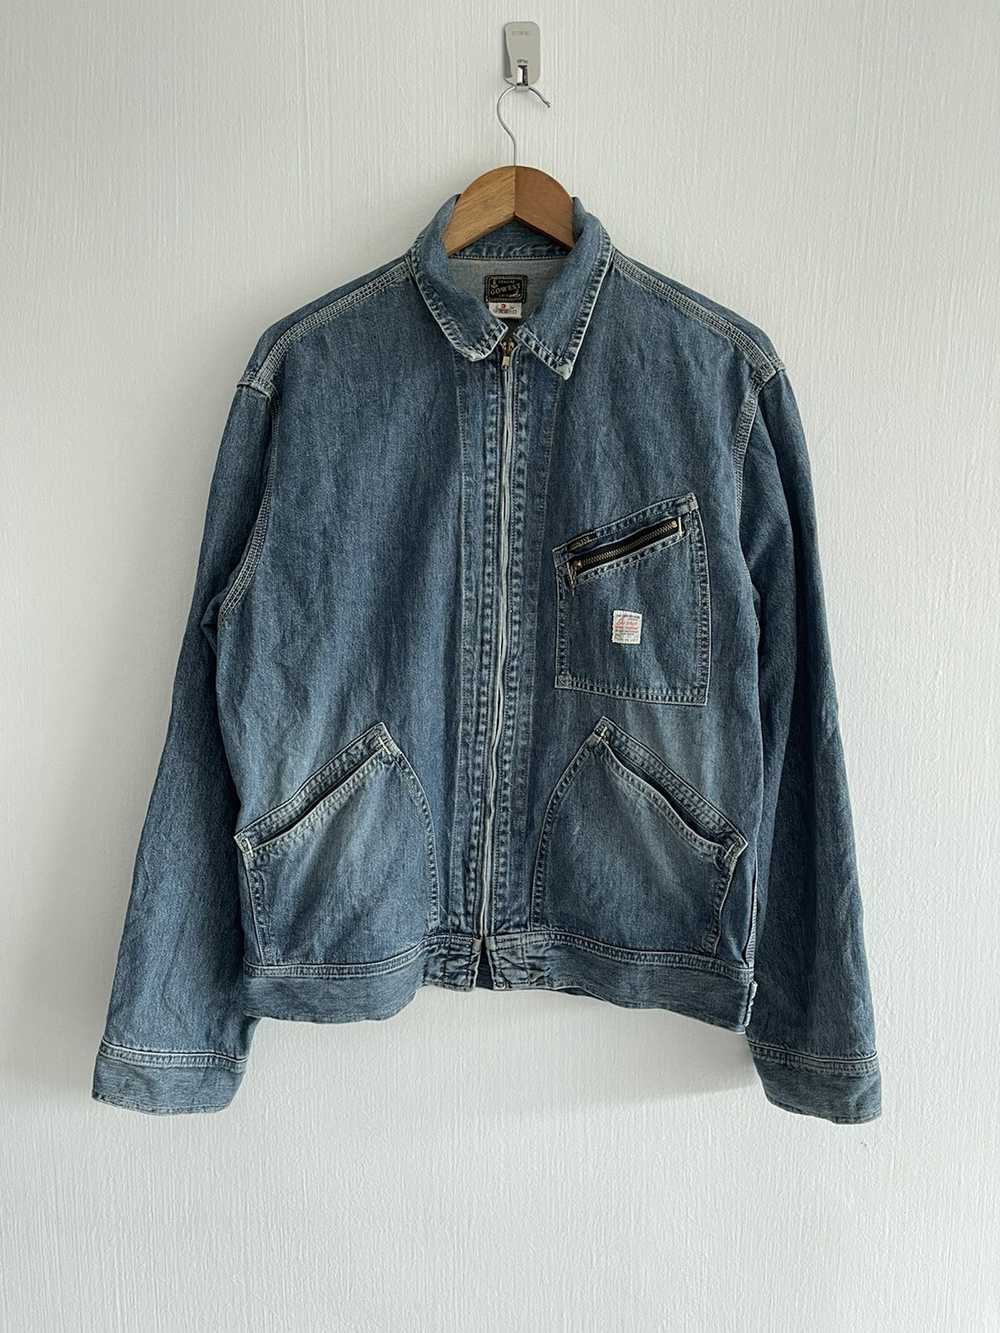 Japanese Brand × Vintage Go West workwear jacket - image 1